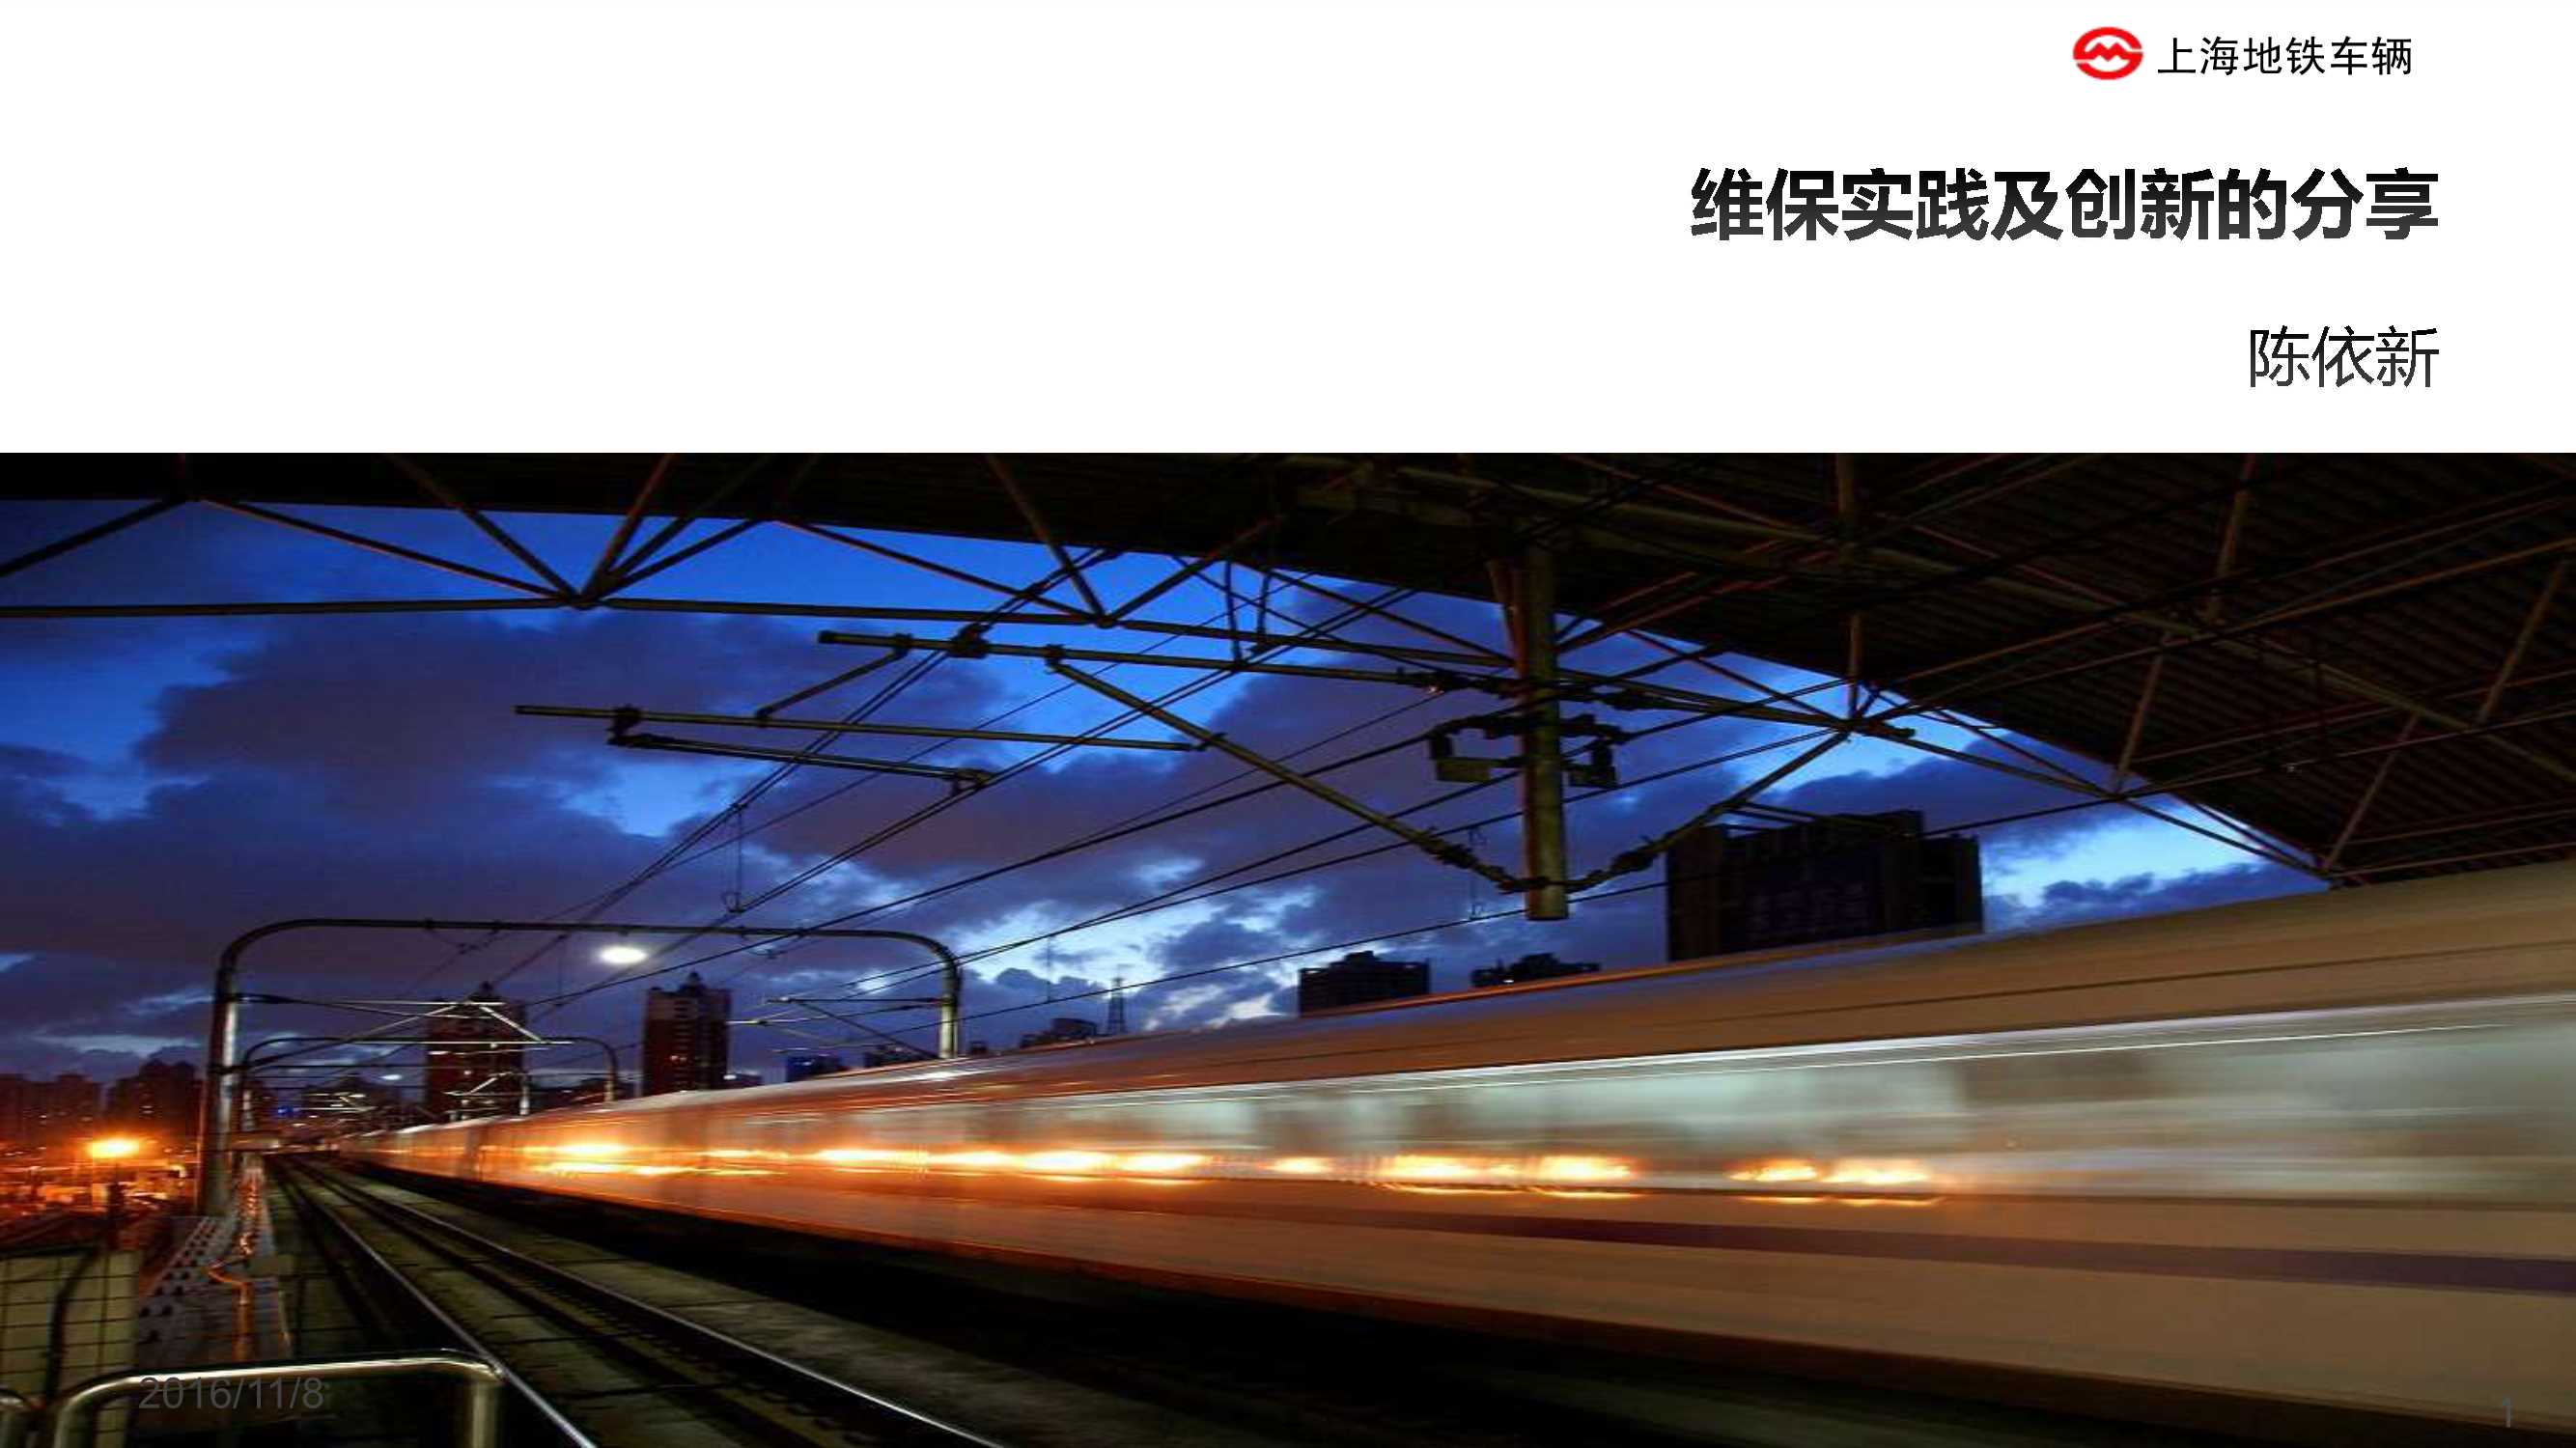 陈依新-上海地铁车辆维保实践与创新的分享（上海地铁）-2016.11-33页